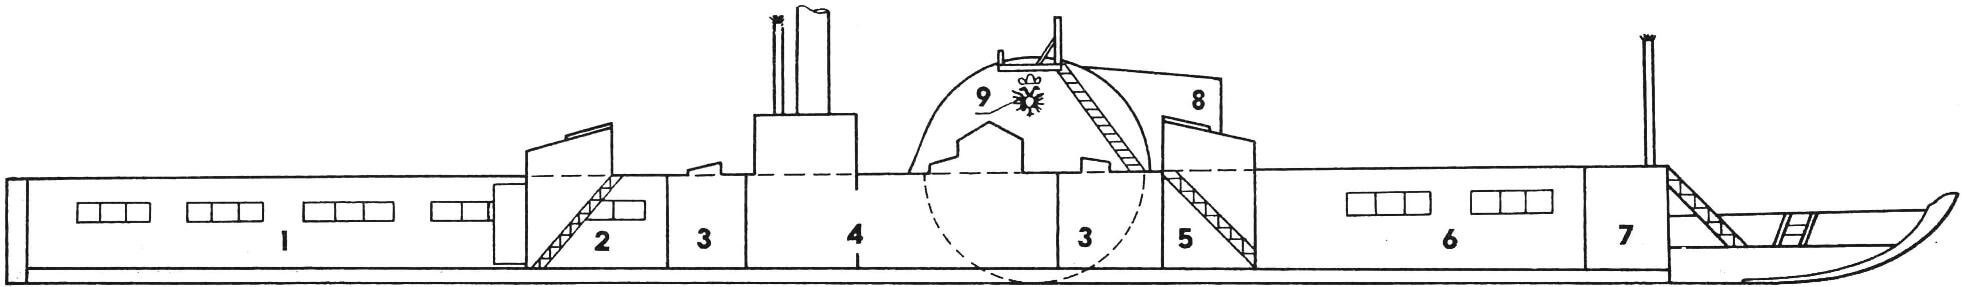 Рис. 2. Компоновочная схема корабля